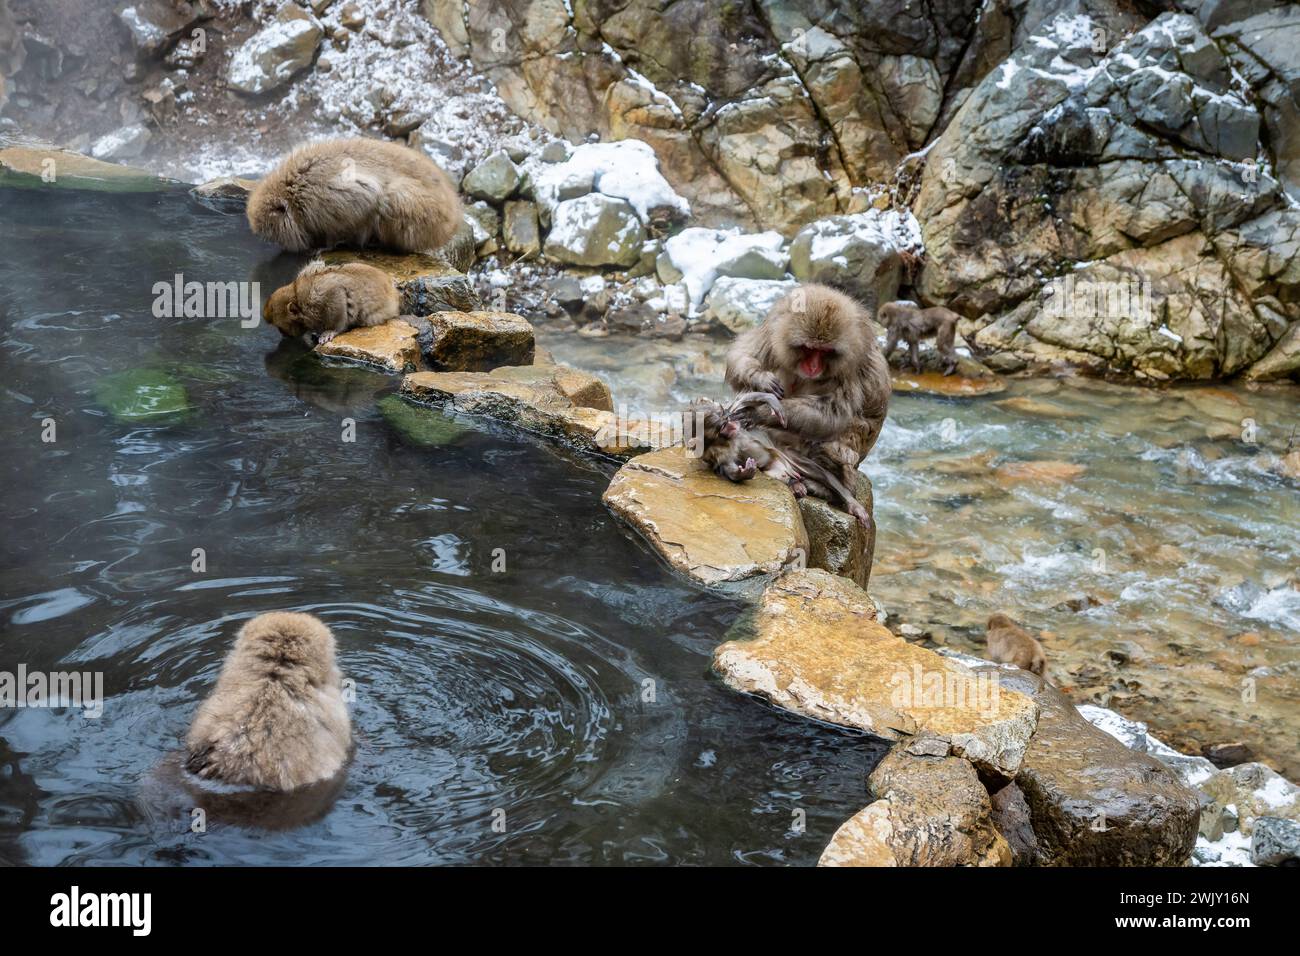 Macachi giapponesi (Macaca fuscata) che fanno il bagno nelle sorgenti termali calde presso il Parco delle scimmie delle nevi (地獄谷野猿公苑). Nagano, Giappone. Foto Stock